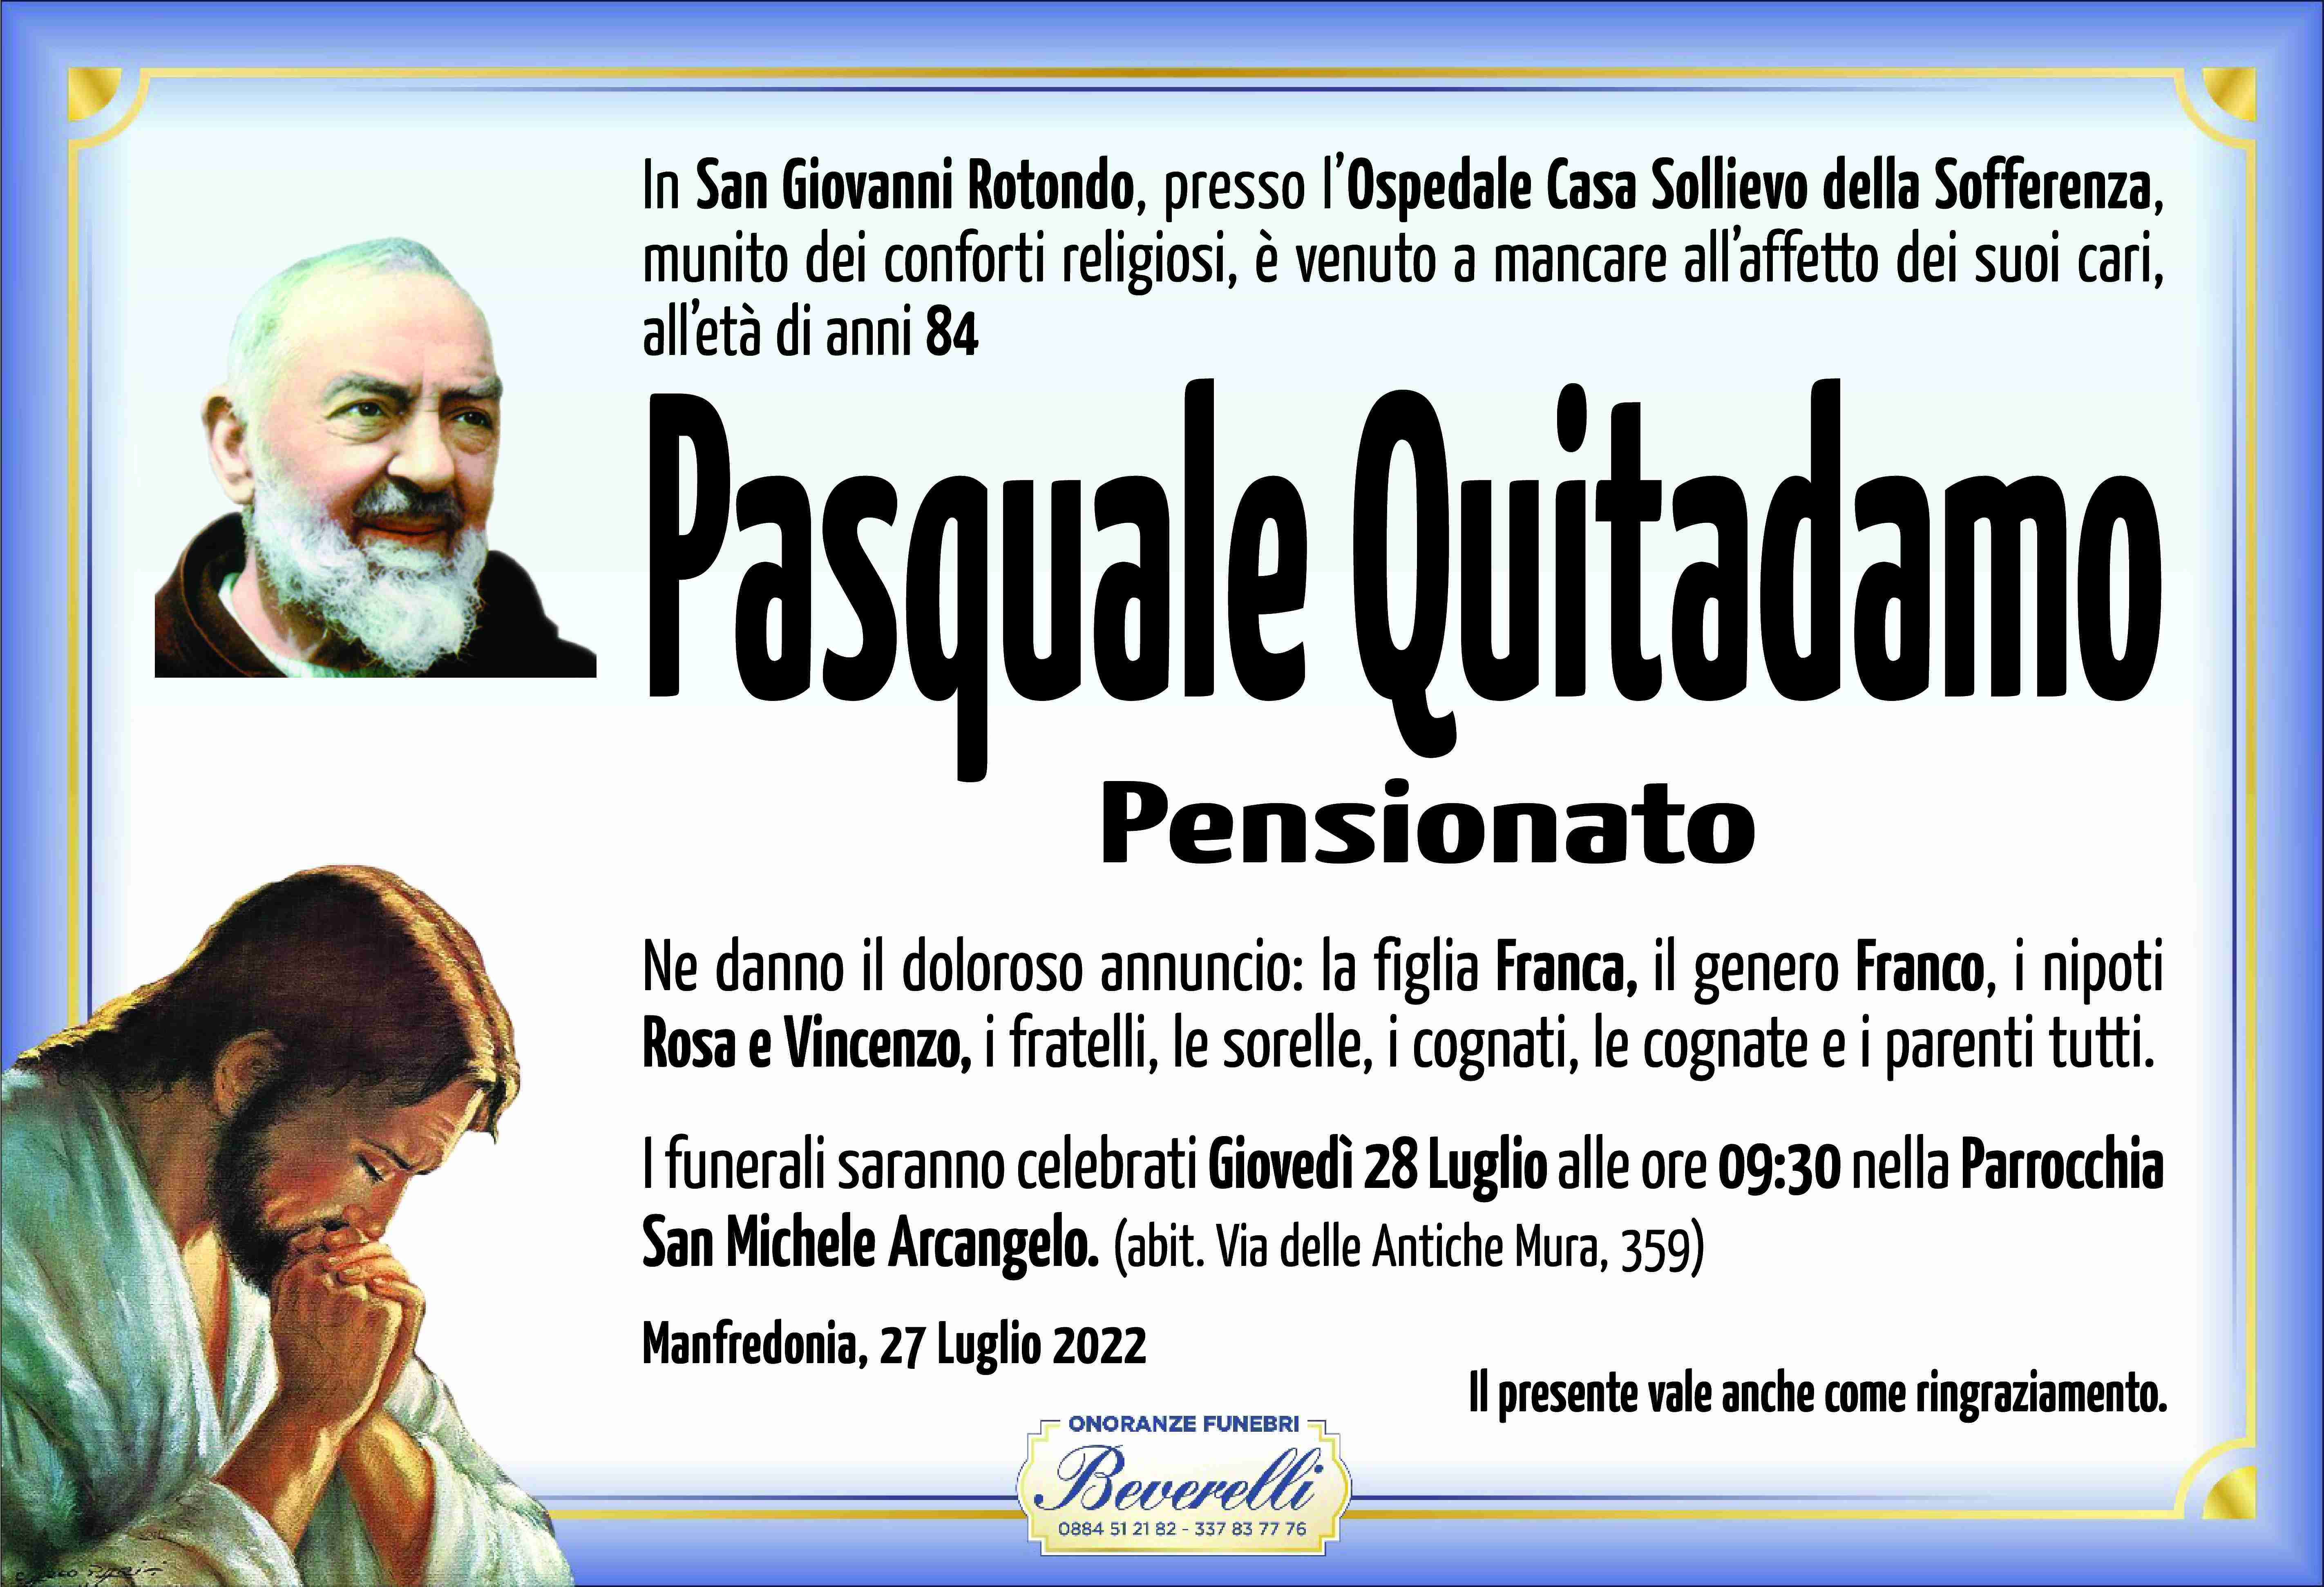 Pasquale Quitadamo